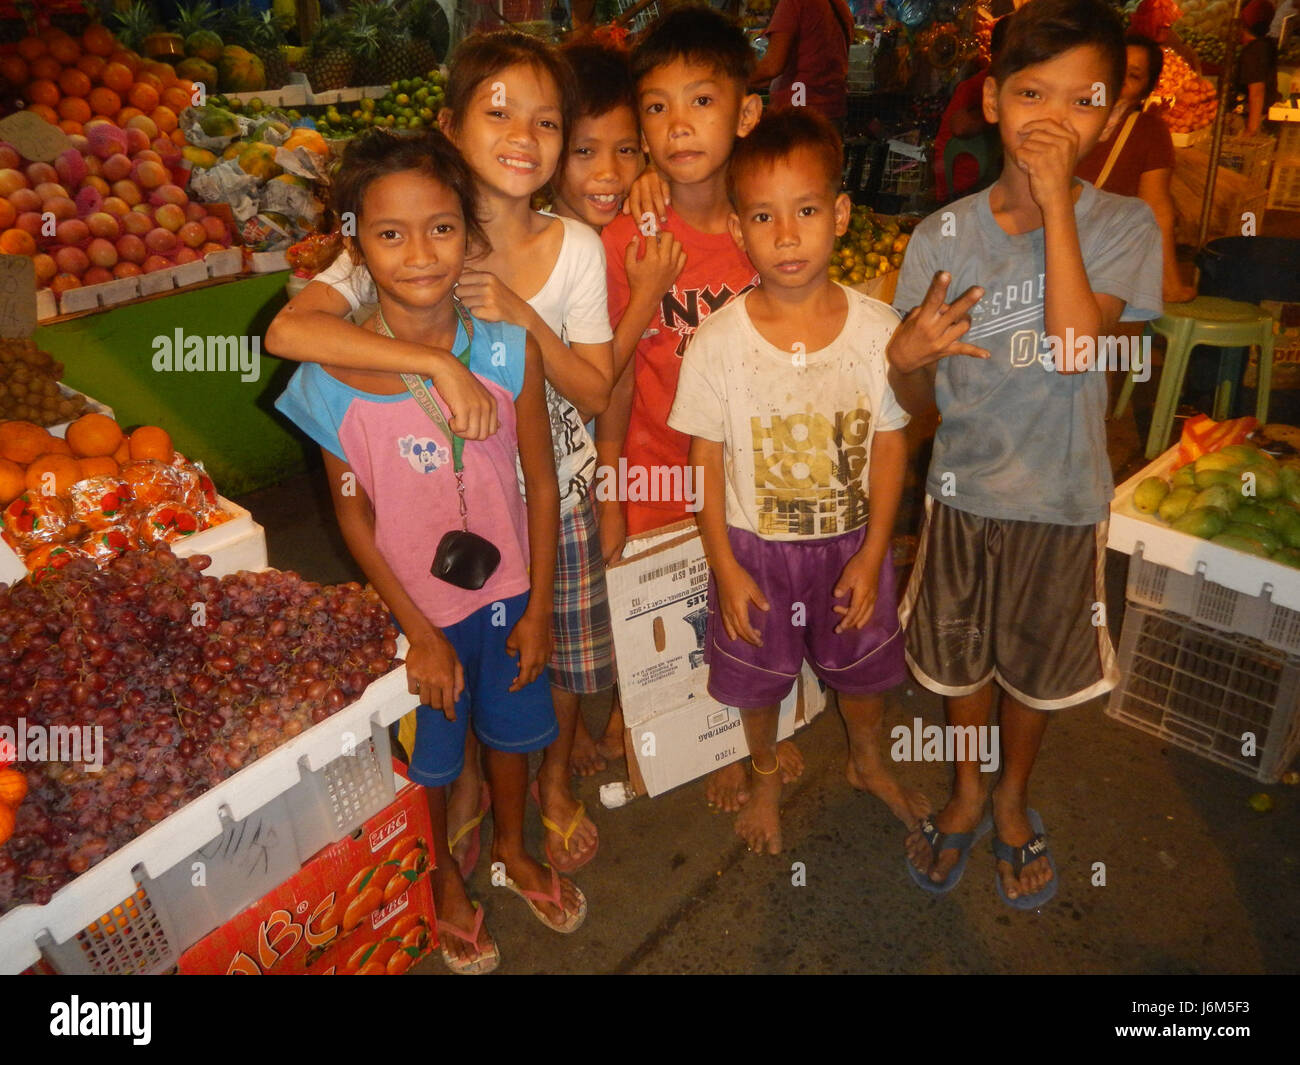 087612 Poblacion, Night Market, Baliuag, Bulacan Stock Photo